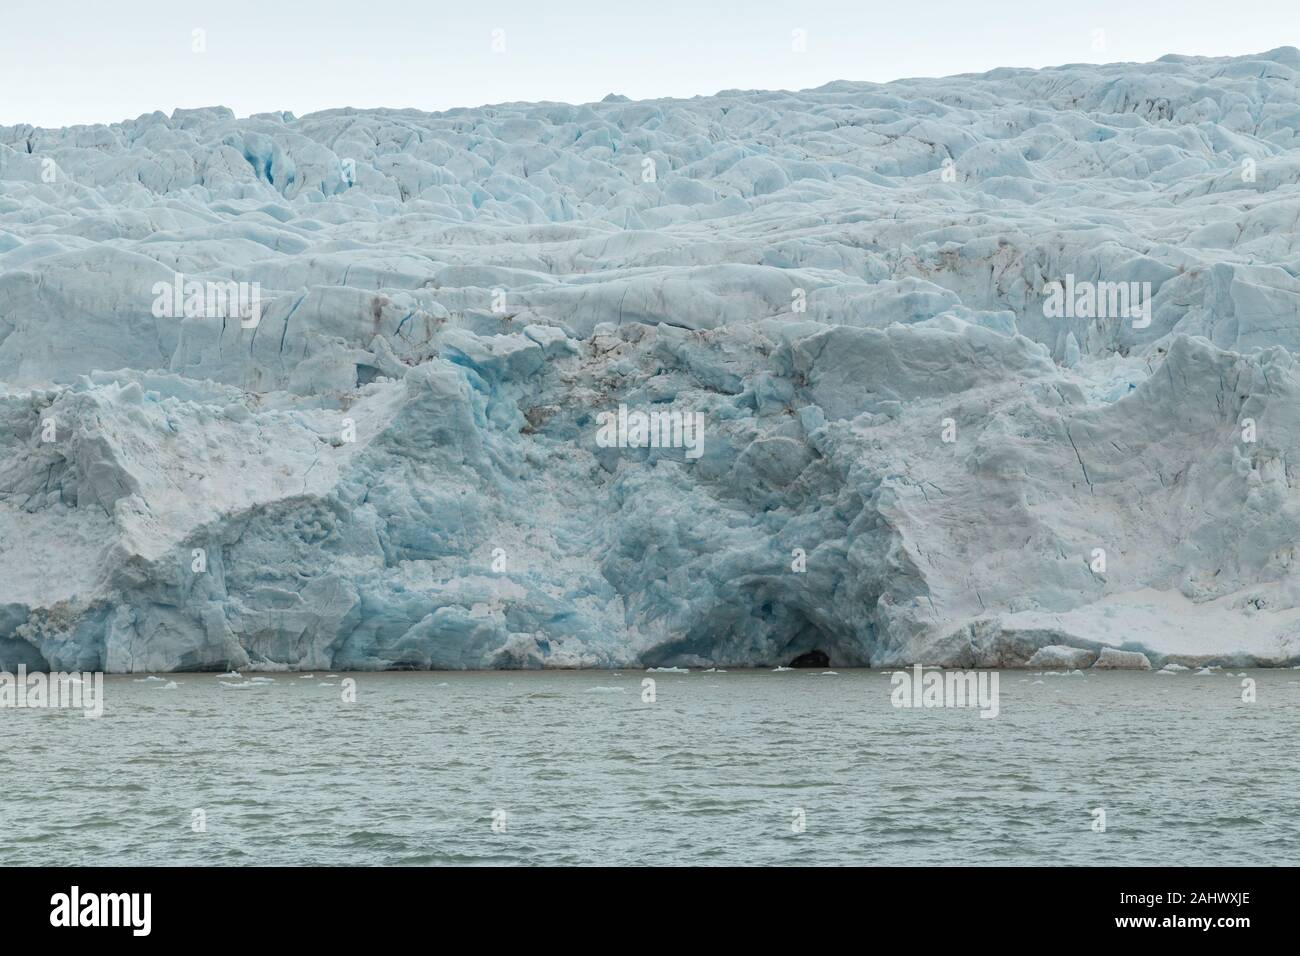 Glacier Nordenskiöld surplombant la ville minière Russe abandonnée de Pyramiden sur Spitzberg, Svalbard, Norvège, dans l'Arctique Banque D'Images